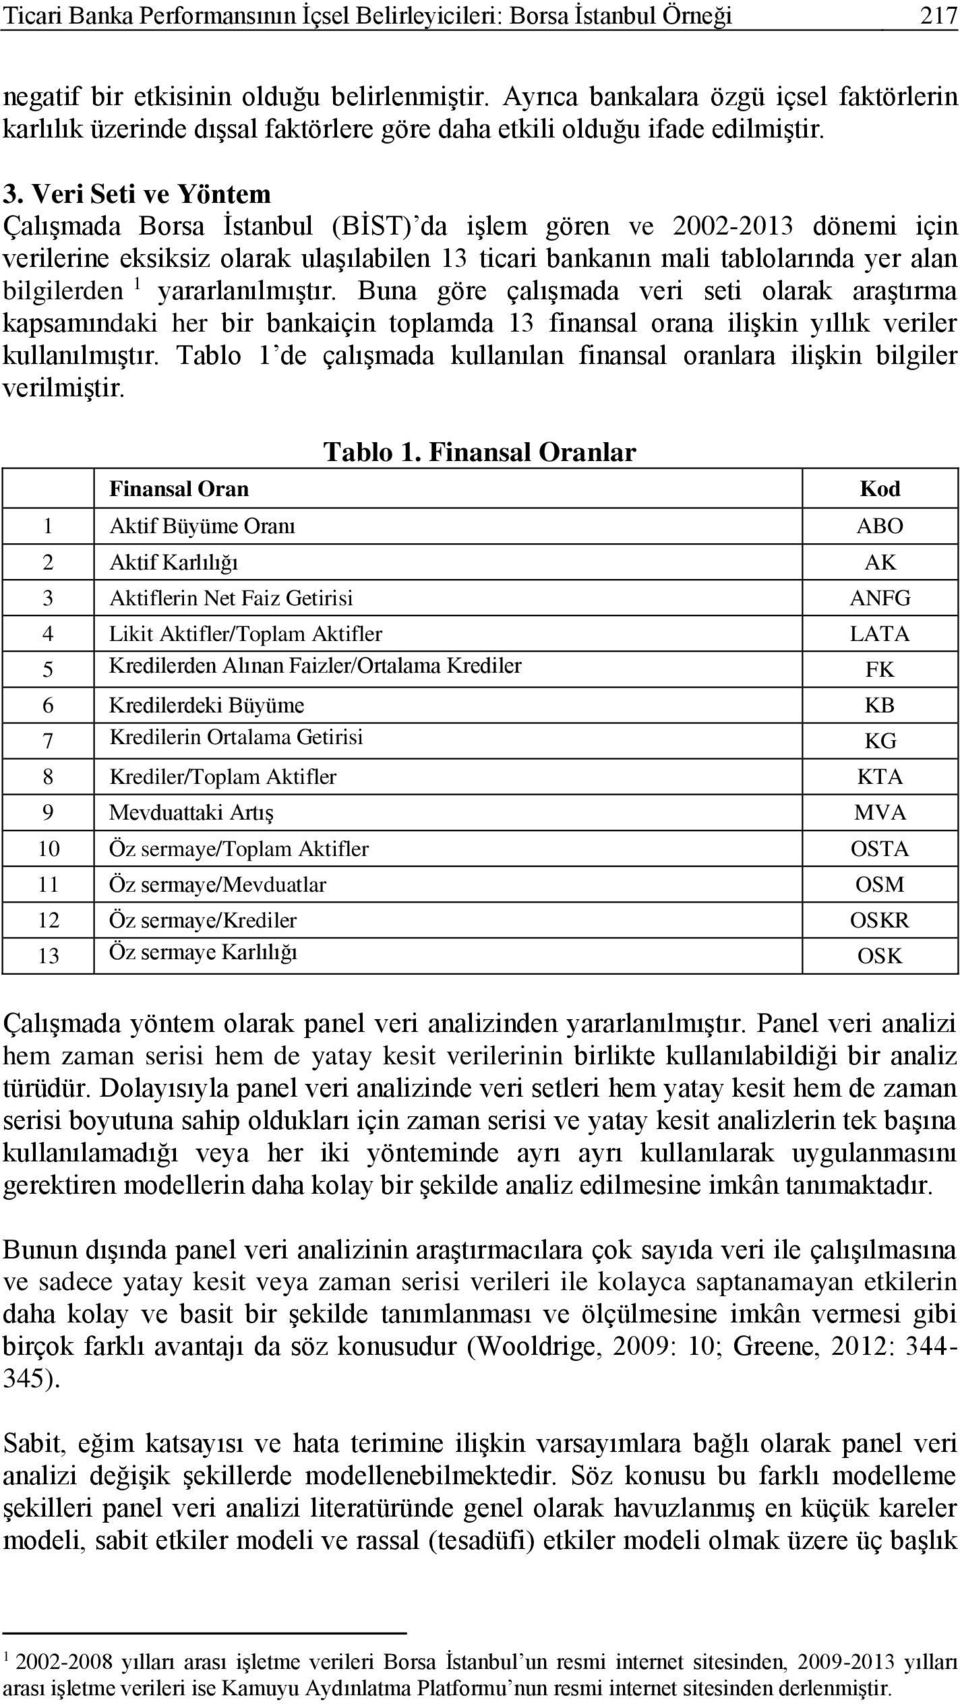 Veri Seti ve Yöntem Çalışmada Borsa İstanbul (BİST) da işlem gören ve 2002-2013 dönemi için verilerine eksiksiz olarak ulaşılabilen 13 ticari bankanın mali tablolarında yer alan bilgilerden 1